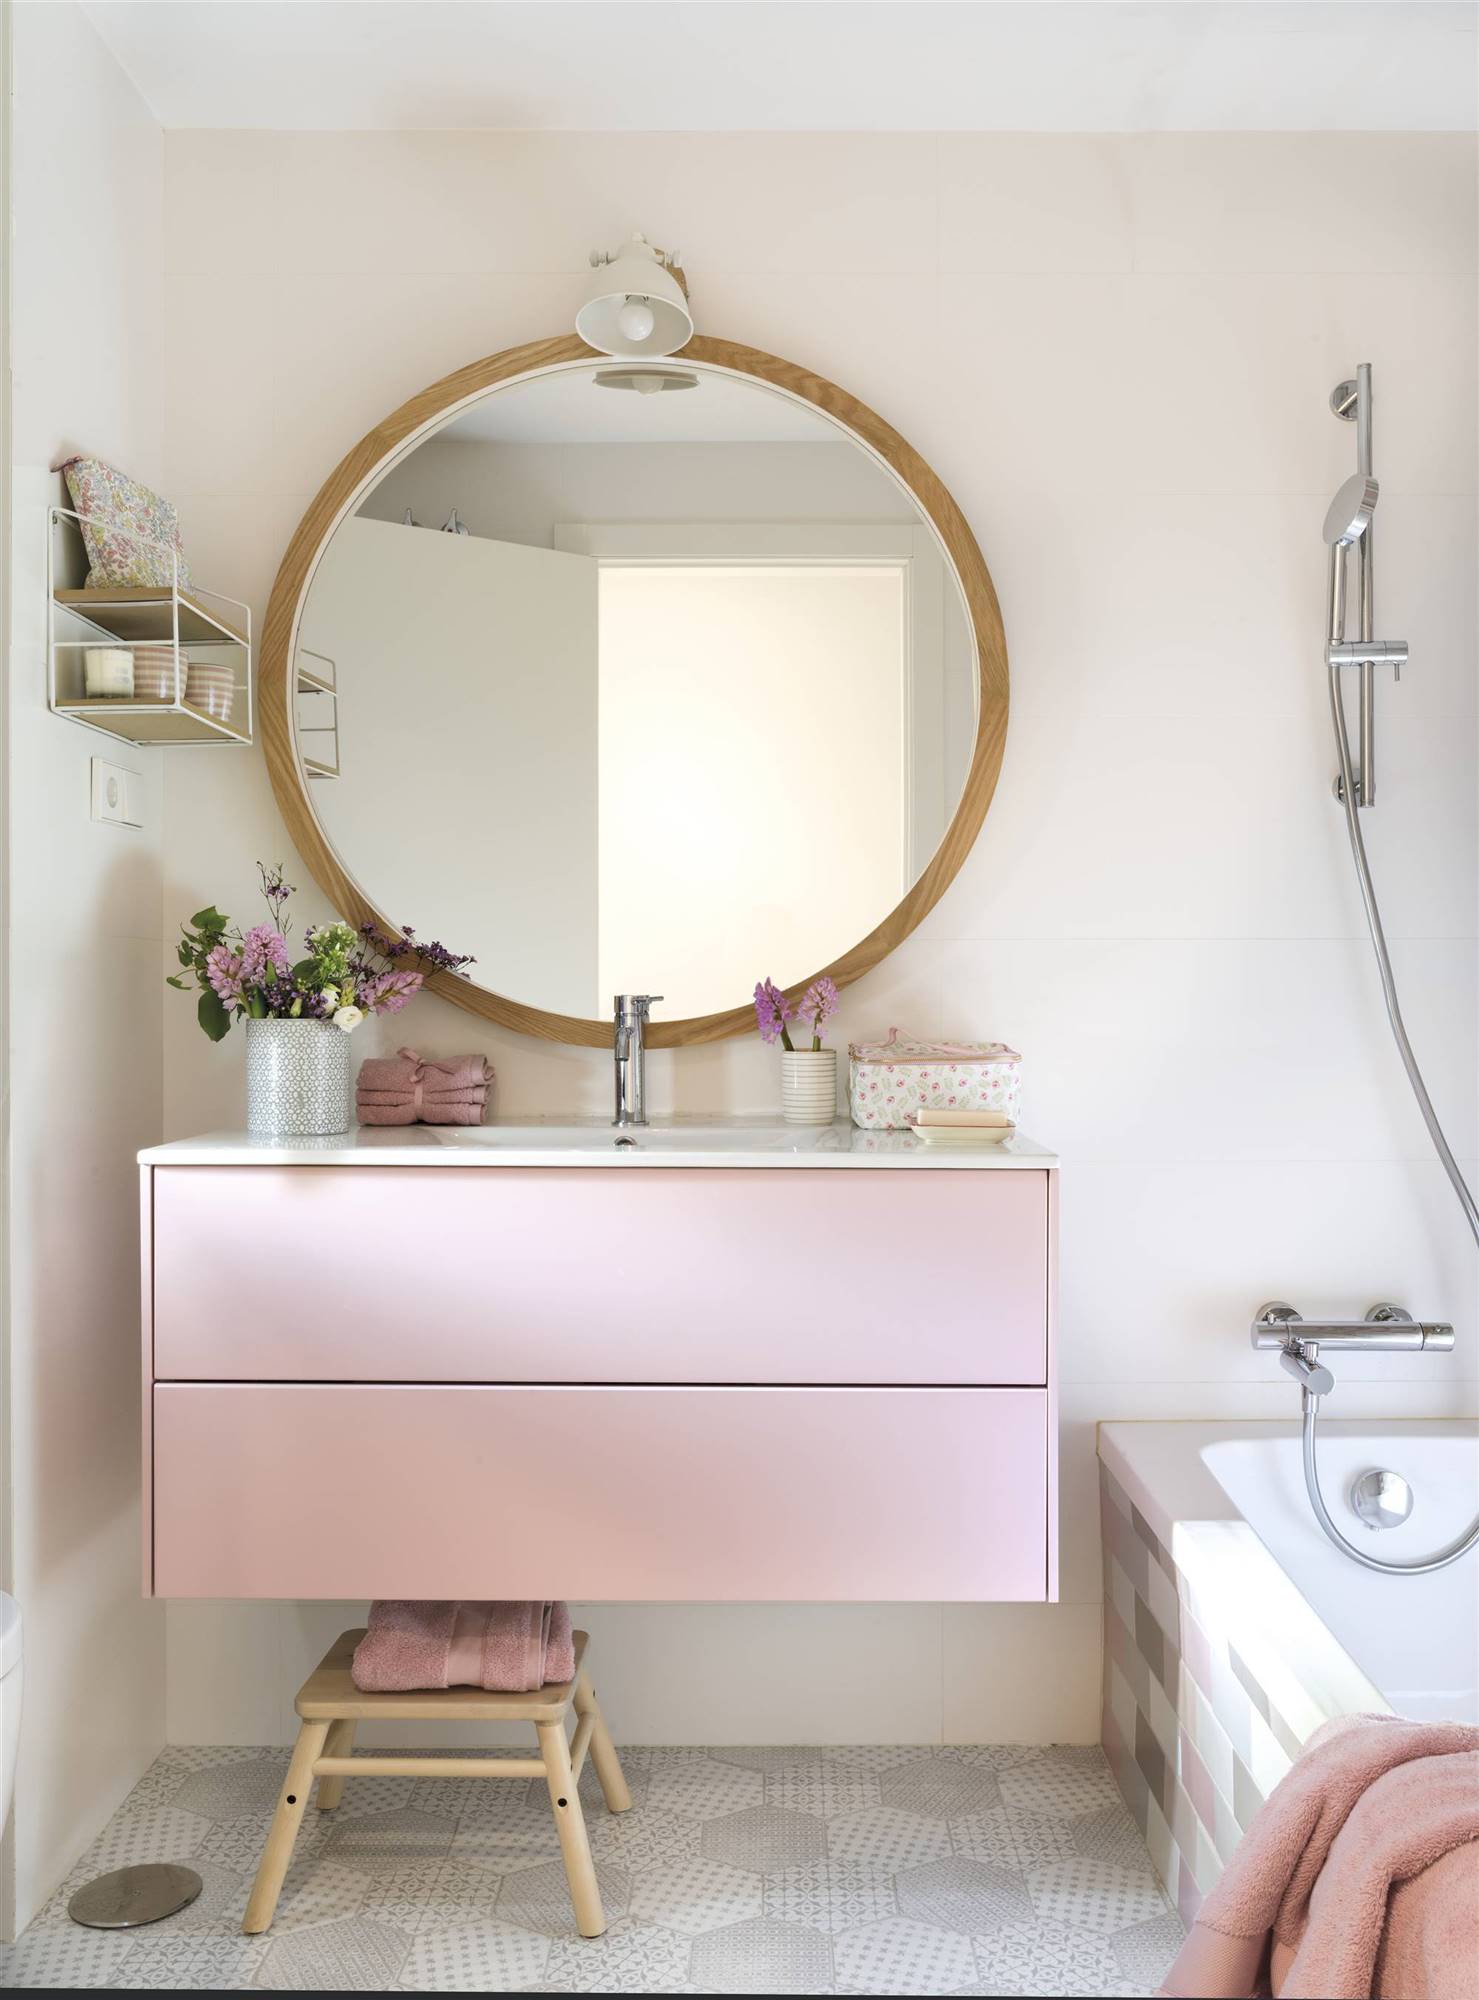 Baño rosa con gran espejo redondo y mueble bajolavabo volado.